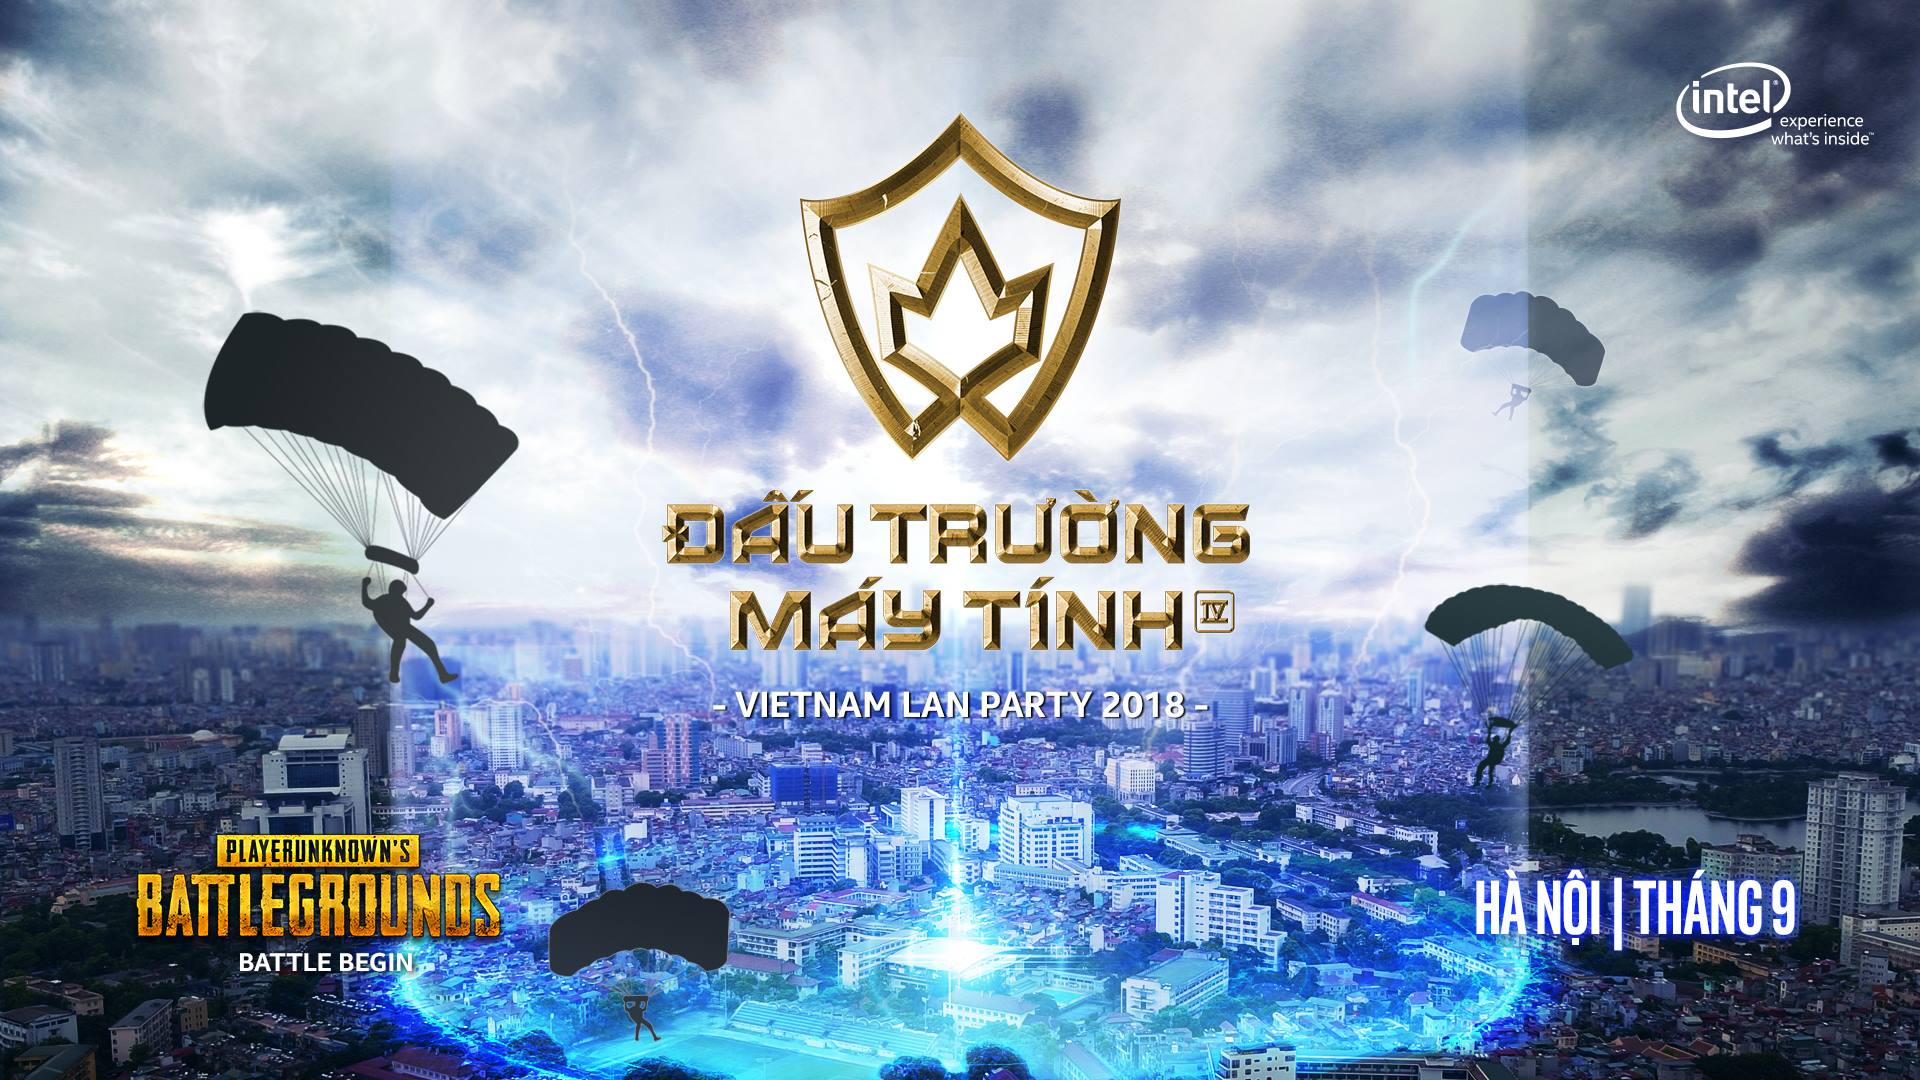 Vietnam LAN Party 2018 - Đấu Trường Máy Tính khởi tranh trong tháng 9